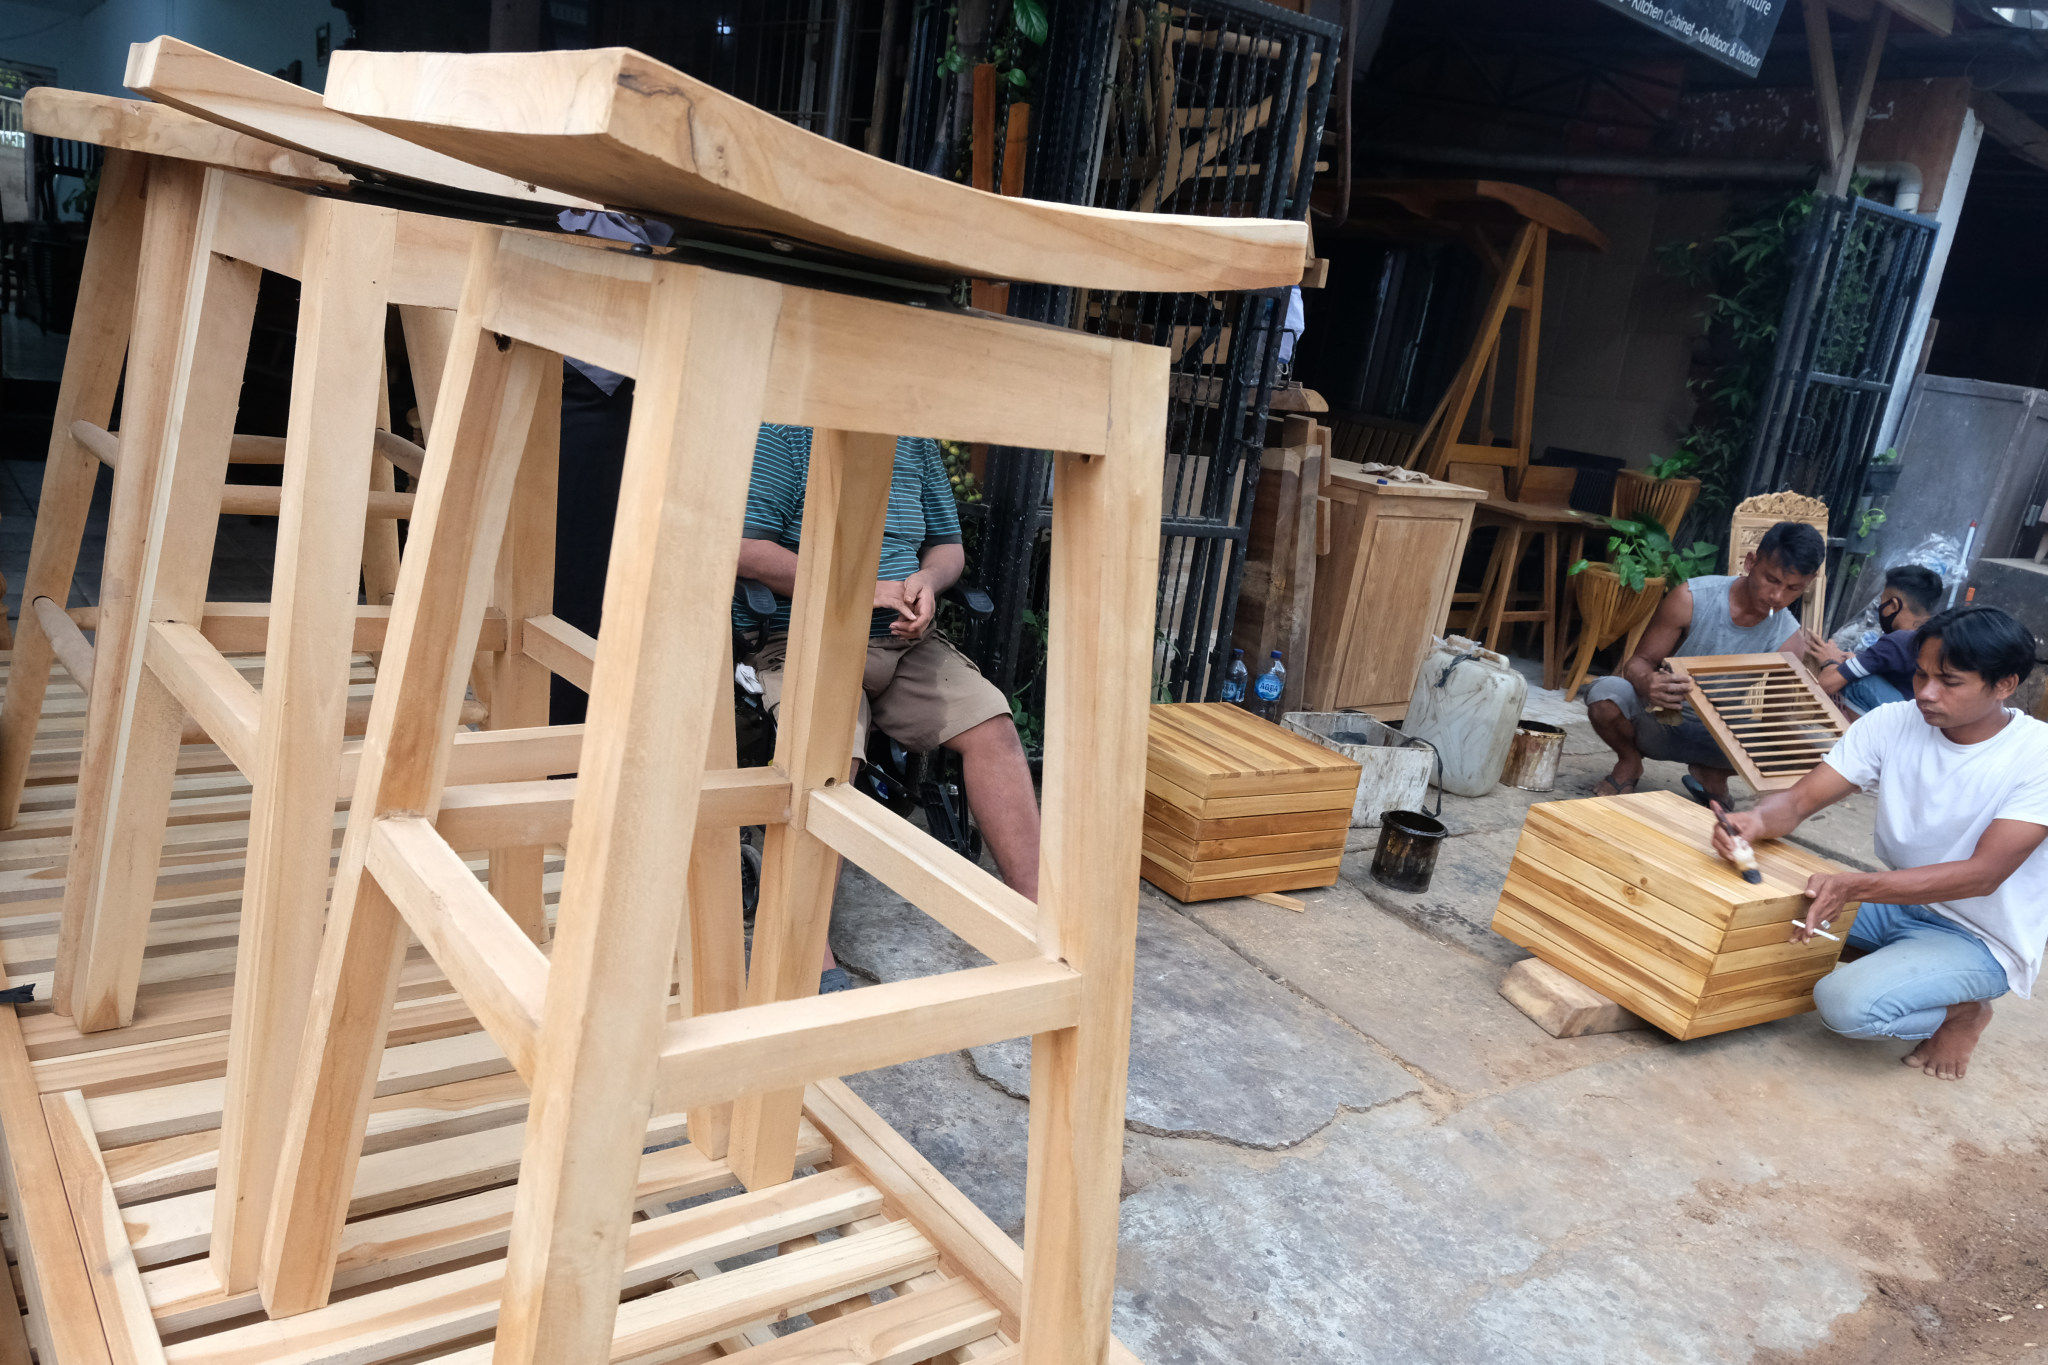 <p>Pekerja menyelesaikan pembuatan produk mebel di workshop furniture kawasan Kemang Utara, Jakarta, Kamis, 26 November 2020. Foto: Ismail Pohan/TrenAsia</p>
